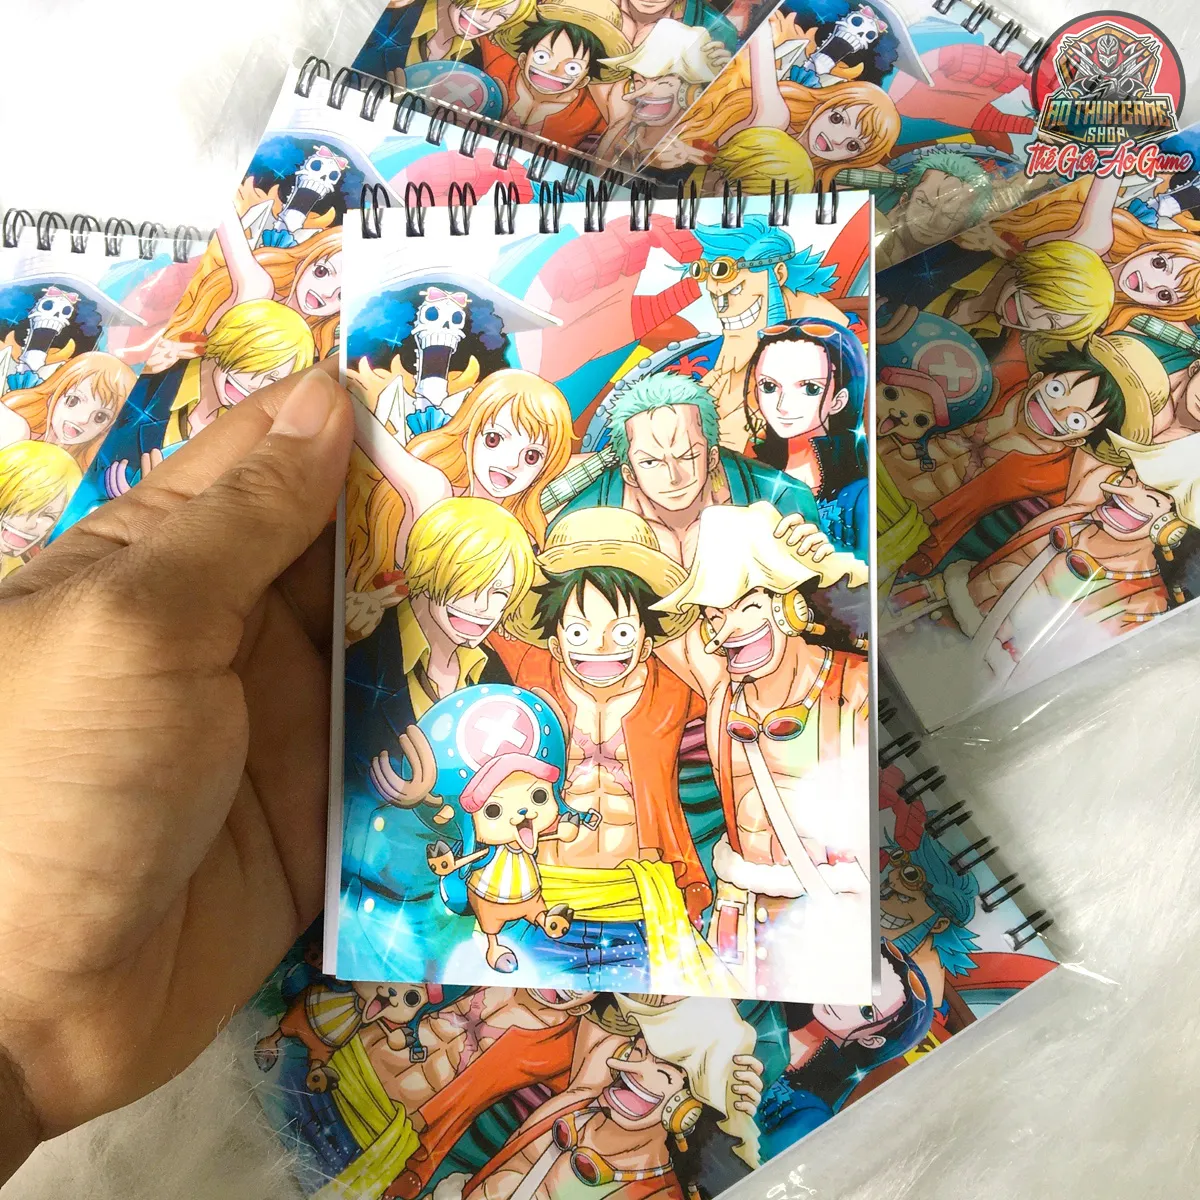 Sổ tay One Piece là một trong những phụ kiện không thể thiếu đối với fan của bộ truyện nổi tiếng này. Sổ tay One Piece không chỉ giúp bạn ghi chép lại các chi tiết trong truyện mà còn là một vật phẩm sưu tập độc đáo. Với các hình ảnh và thông tin cập nhật mới nhất về One Piece, sổ tay One Piece sẽ giúp bạn thỏa niềm đam mê với bộ truyện này.